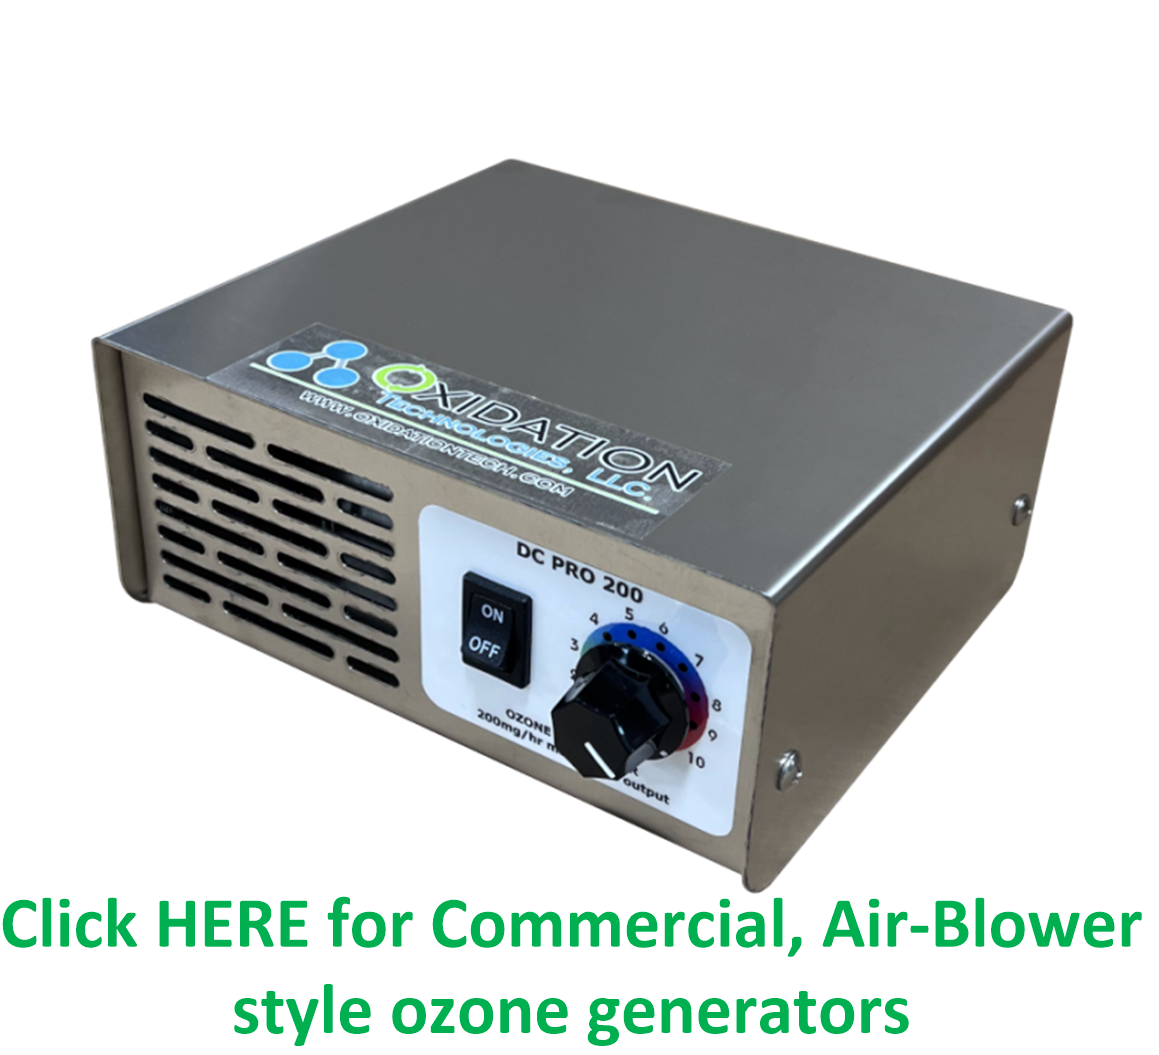 Commercial Ozone Generators